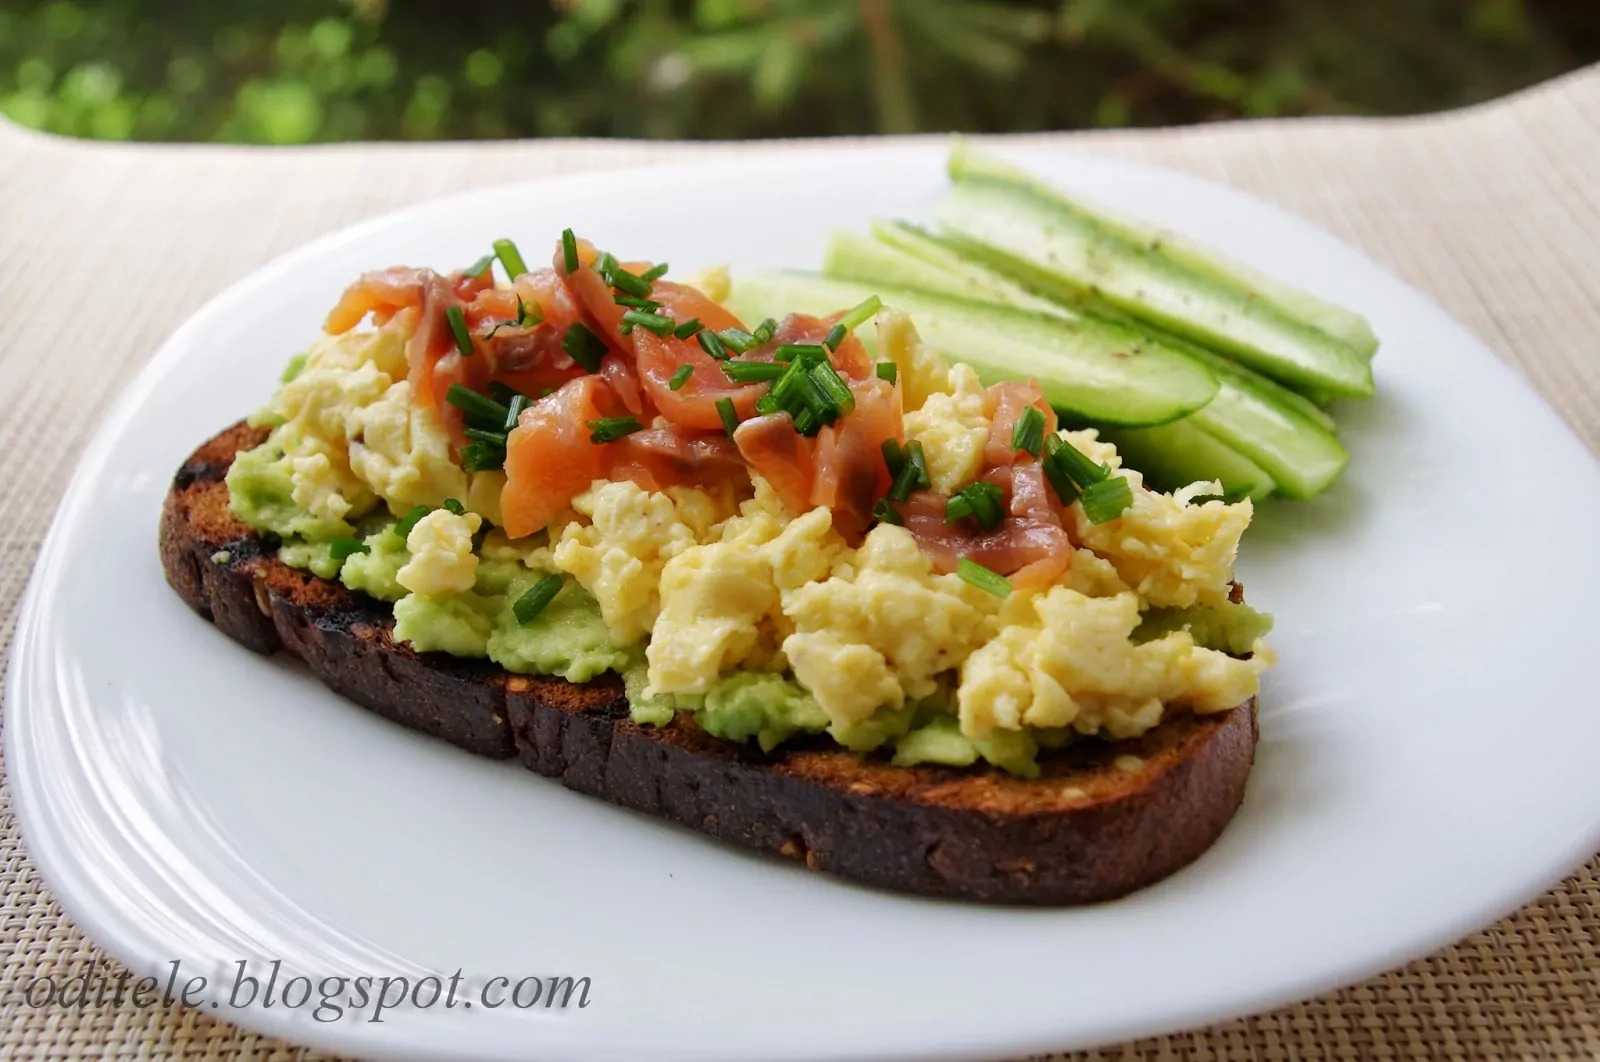 Pusryčių sumuštinis - skrebutis su trintu avokadu, plaktais kiaušiniais ir rūkyta lašiša